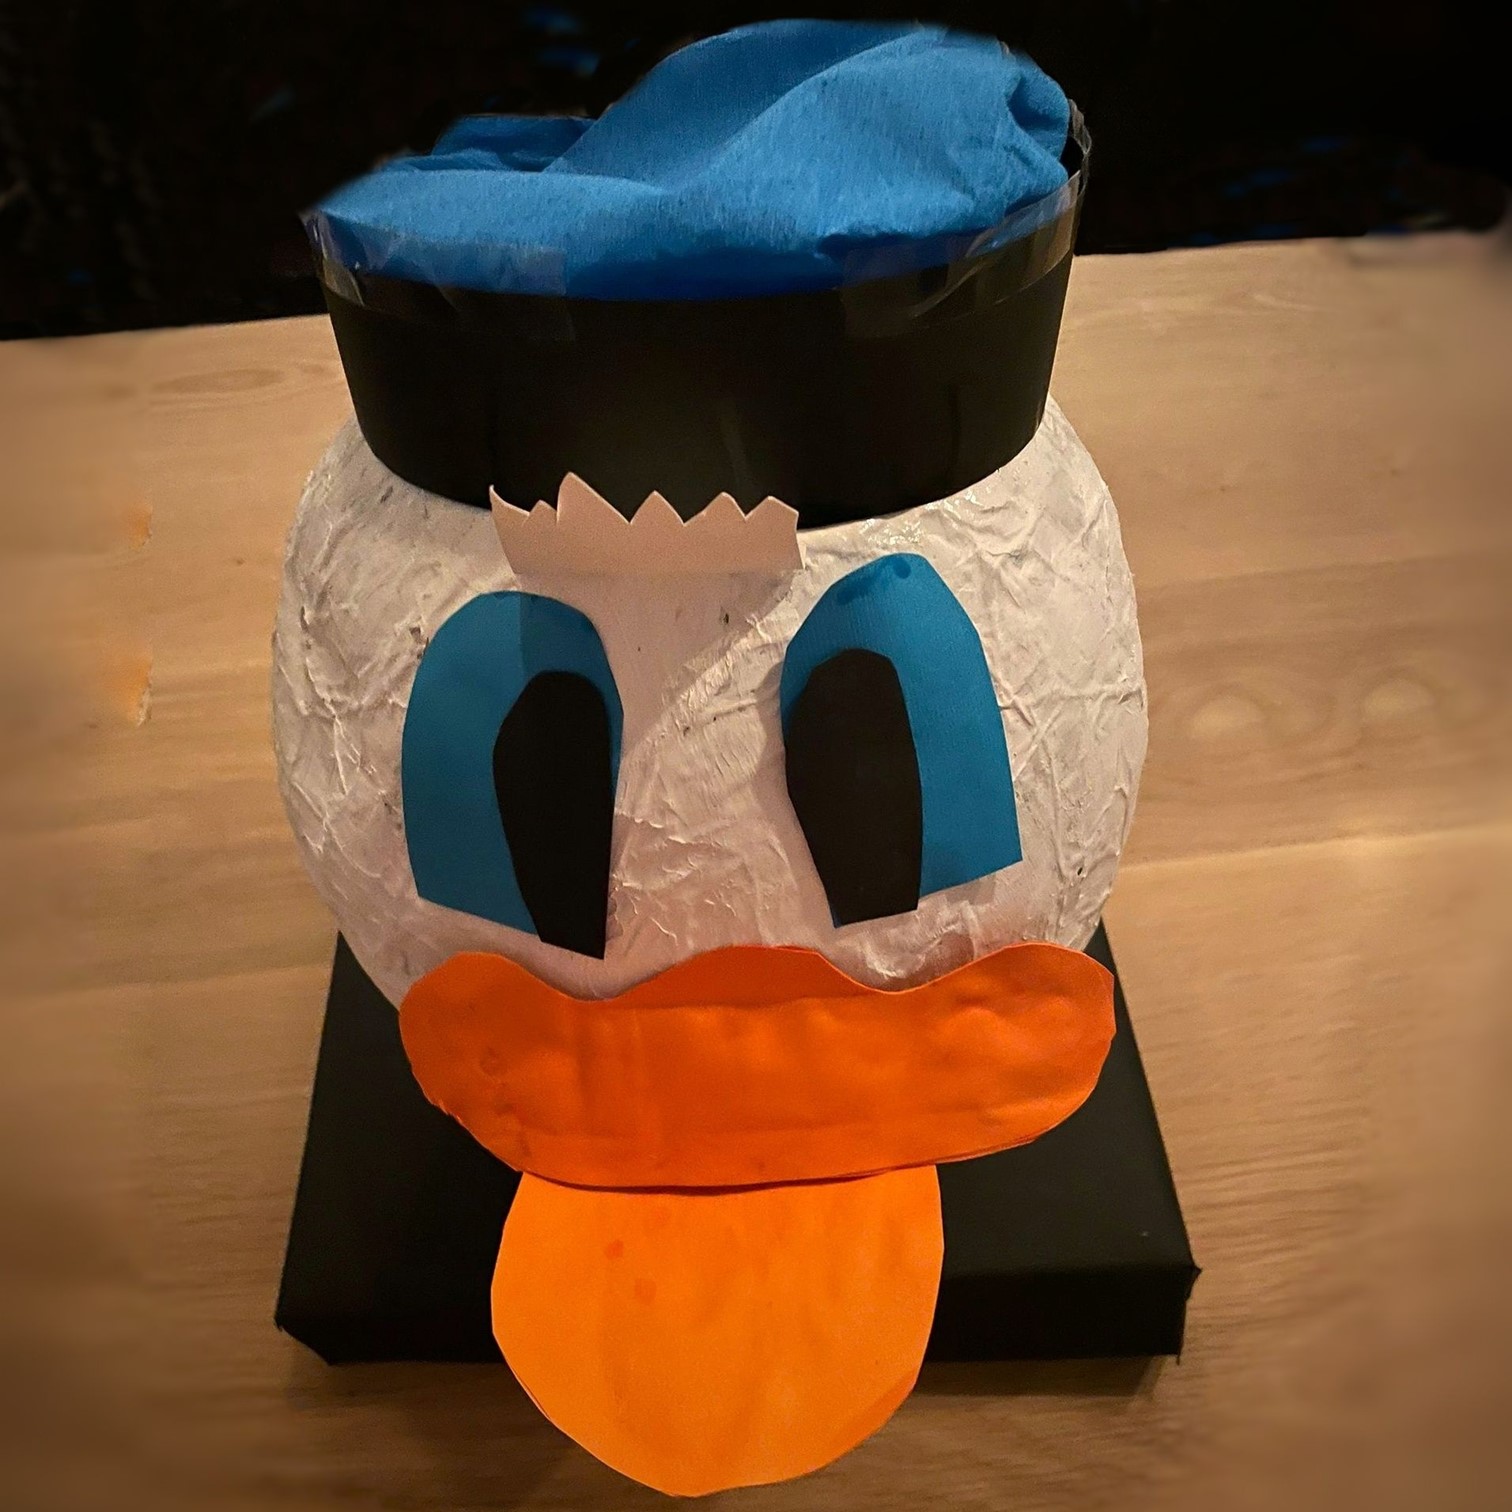 101 ideeën om te knutselen met kinderen, zoals deze donald duck van papier mache